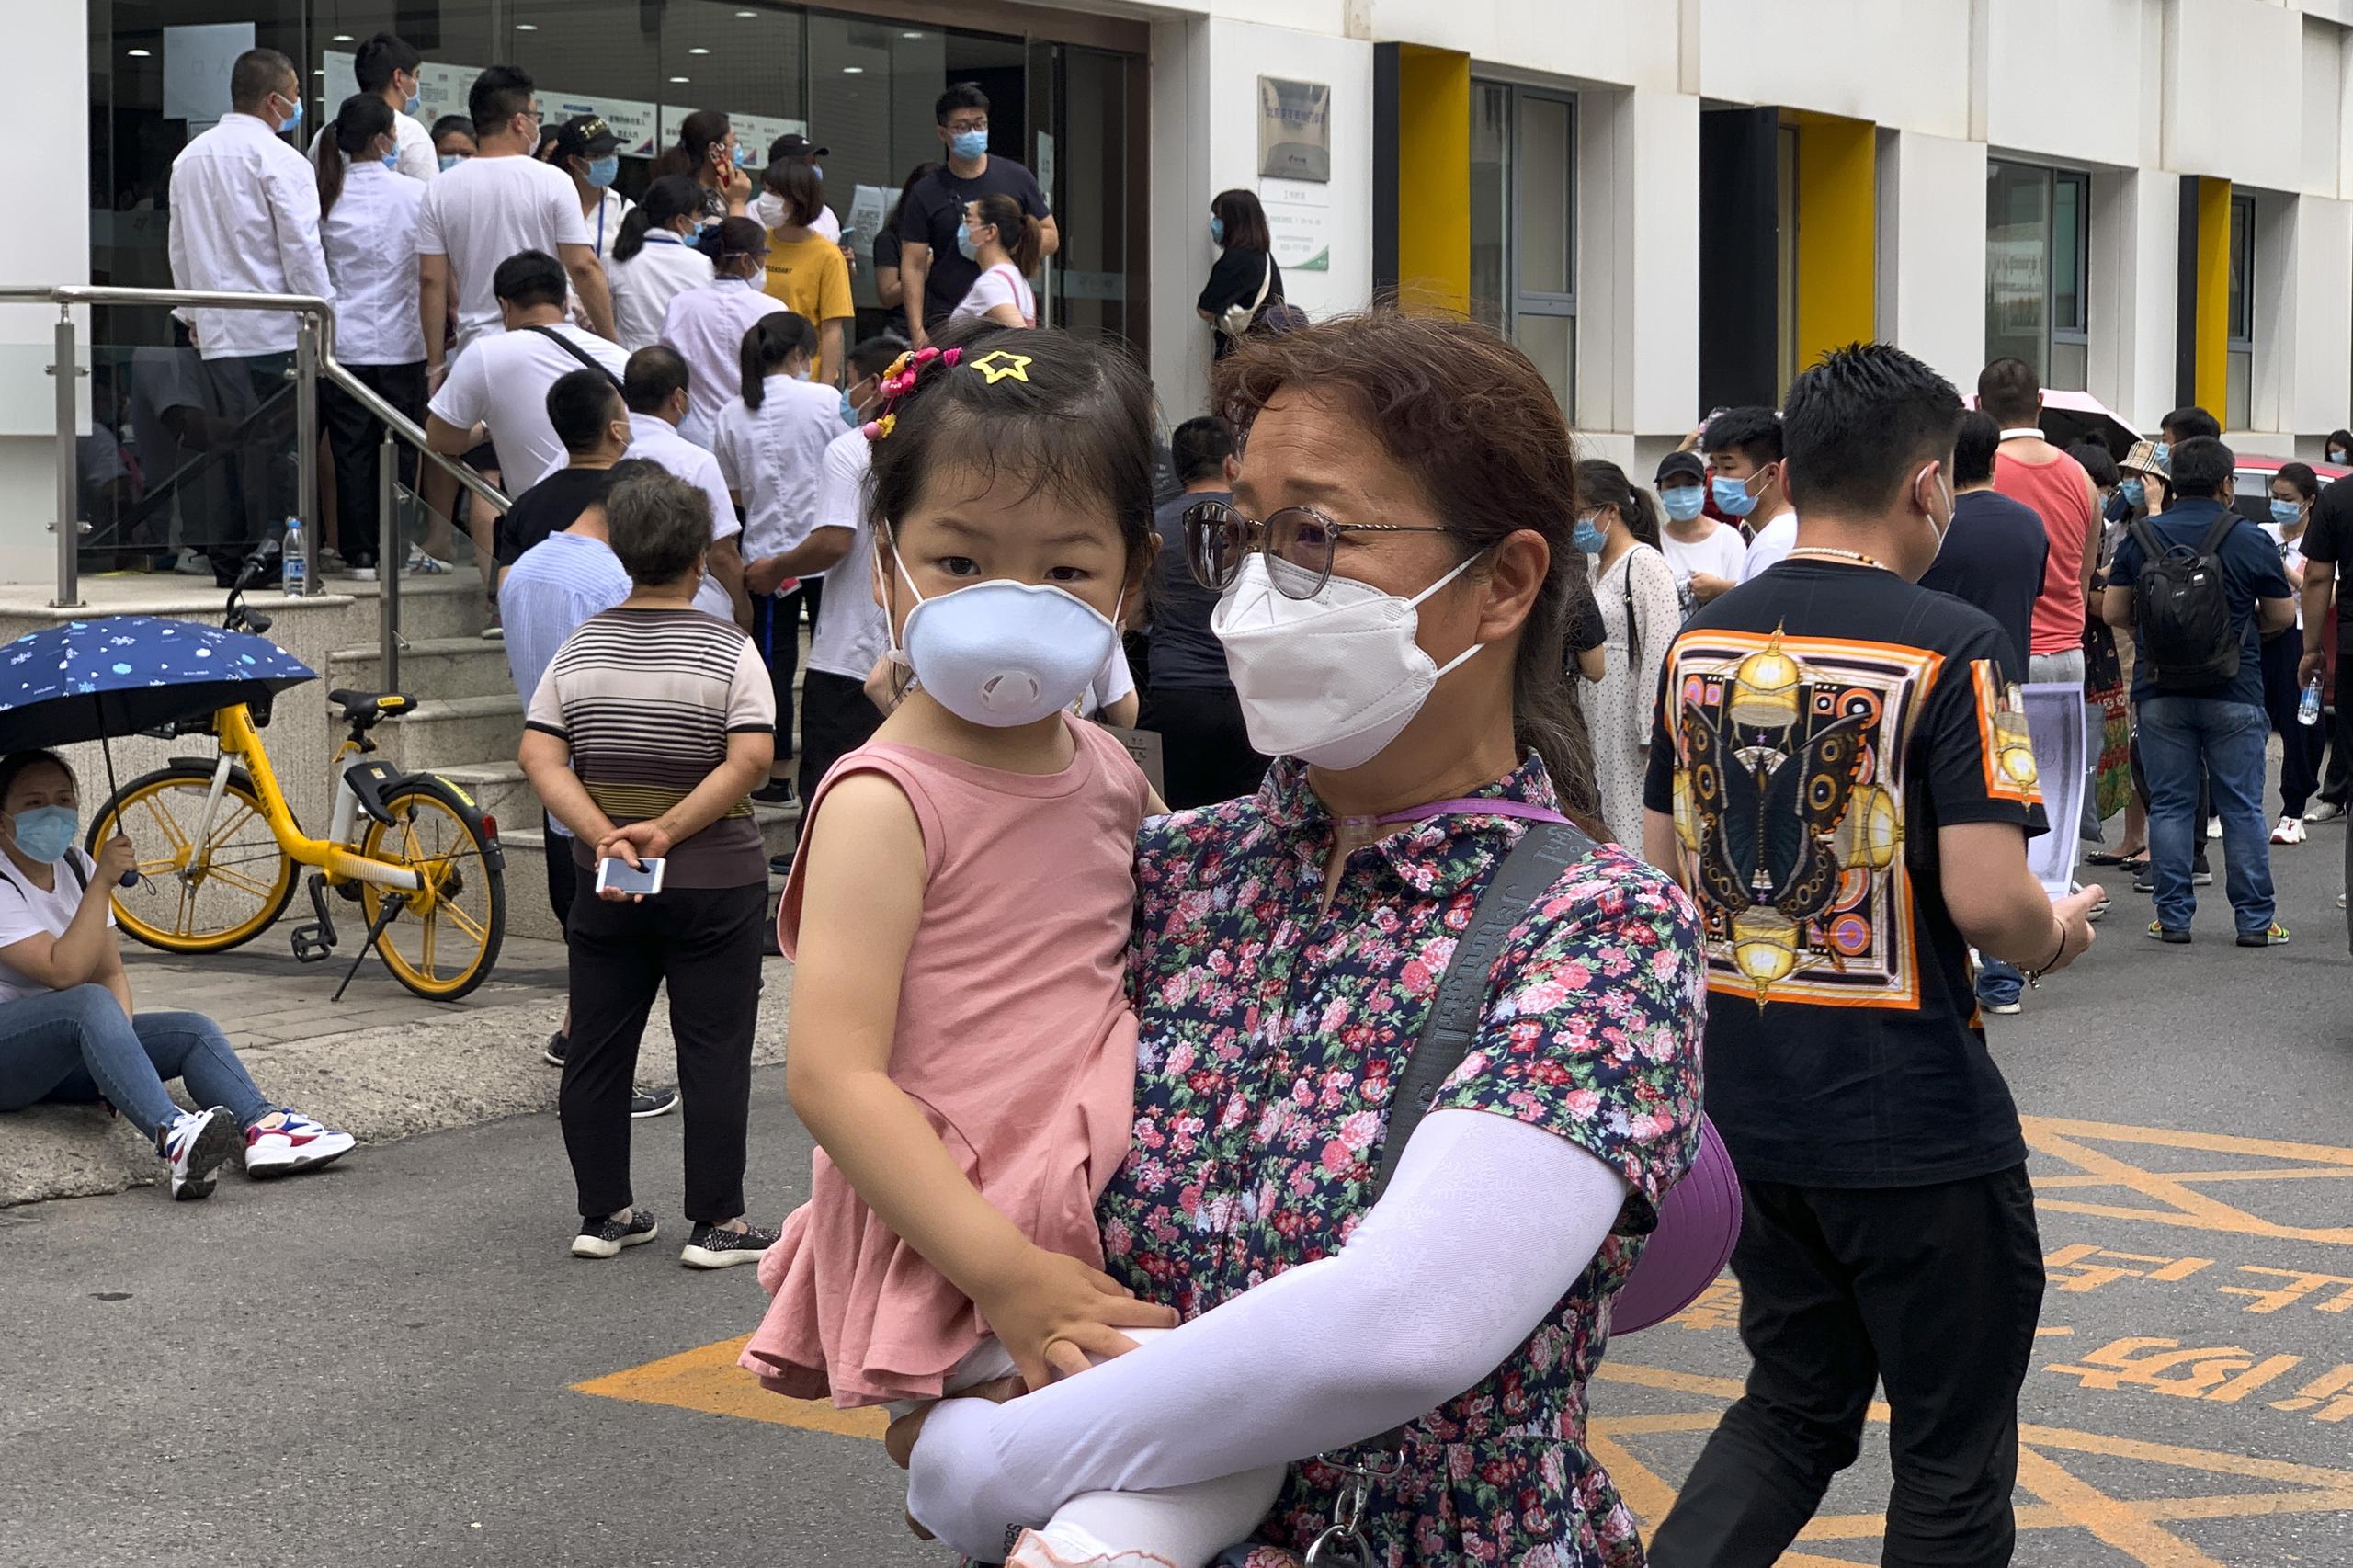 Una mujer carga una niña, ambas con mascarillas, mientras al fondo se obsevra una fila de personas para hacerse las pruebas obligatorias de coronavirus.